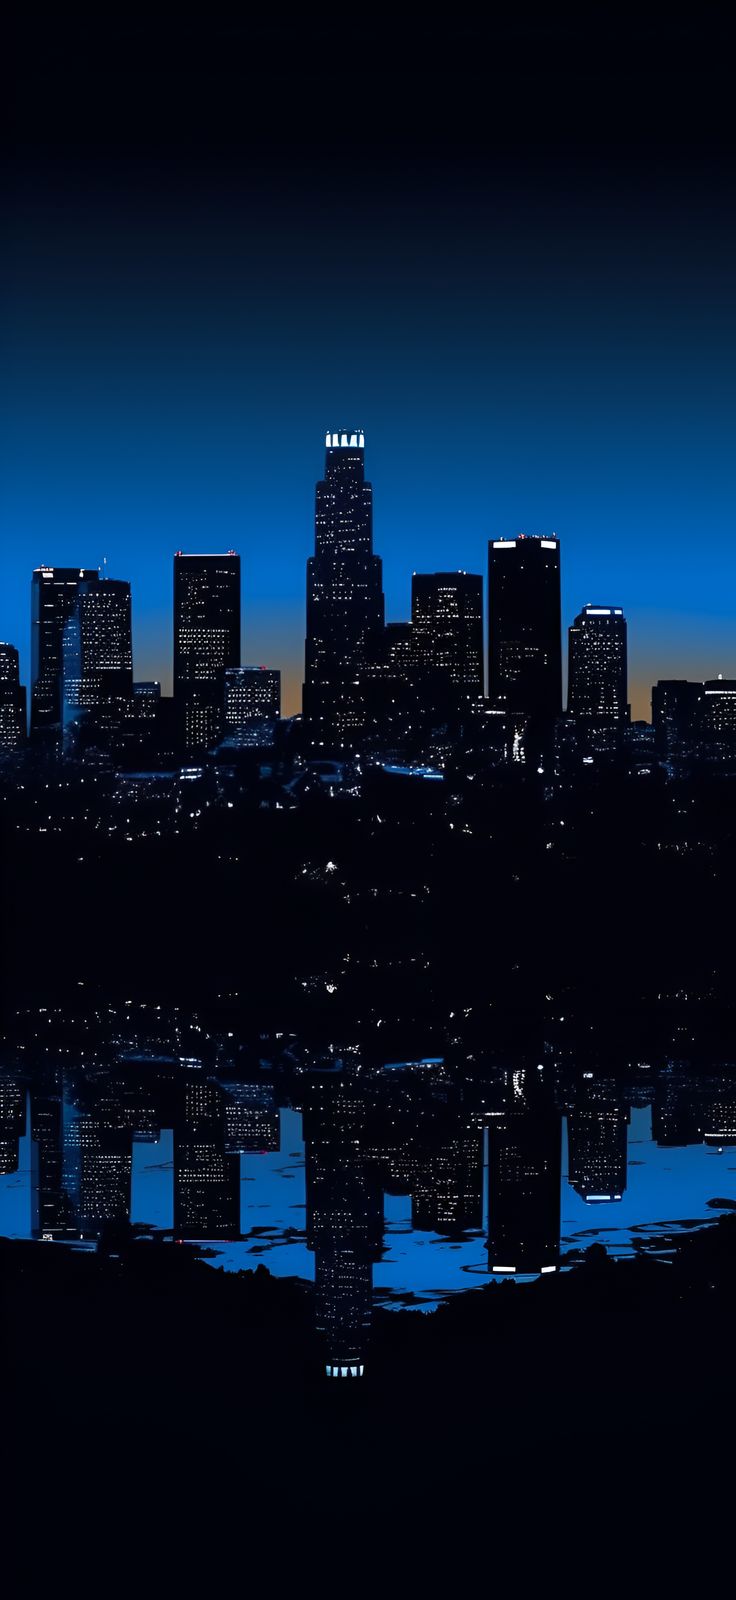 Los Angeles Skyline: Deep Blue Aesthetic Wallpaper iPhone. Los angeles skyline, Los angeles wallpaper, Aesthetic wallpaper